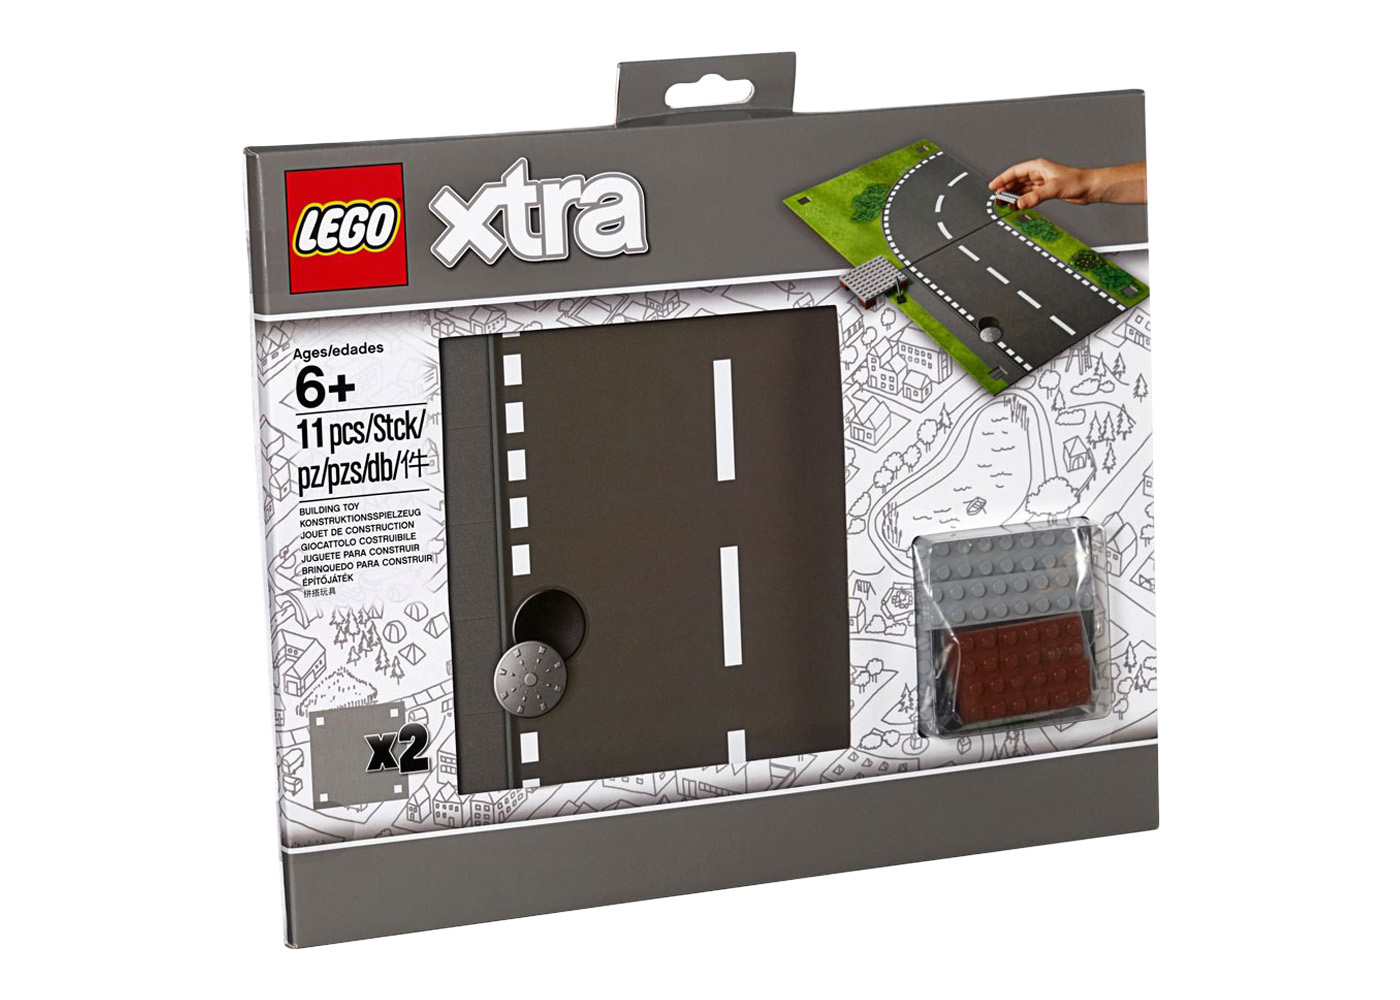 LEGO Xtra Road Playmat Set 853840 - CN